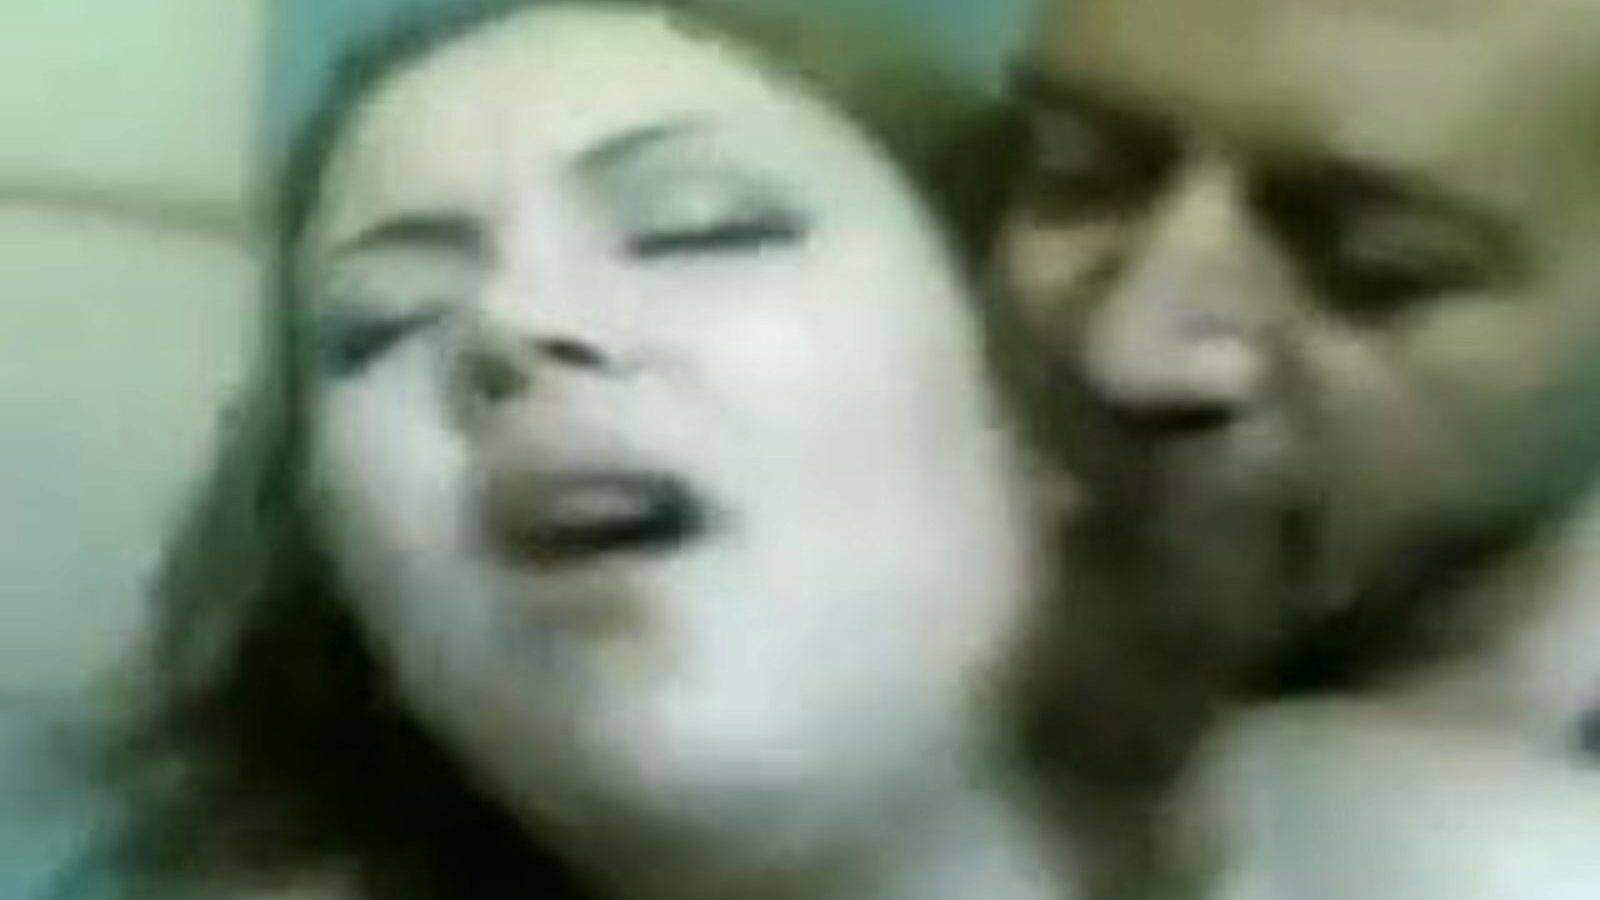 madame lily: grátis sessenta e nove vídeo pornô 07 - xhamster assista ao clipe madame lily tubo de lovemaking gratuitamente no xhamster, com o bando superior de árabes egípcios, 69 e episódios de vídeos pornôs de bunda grande